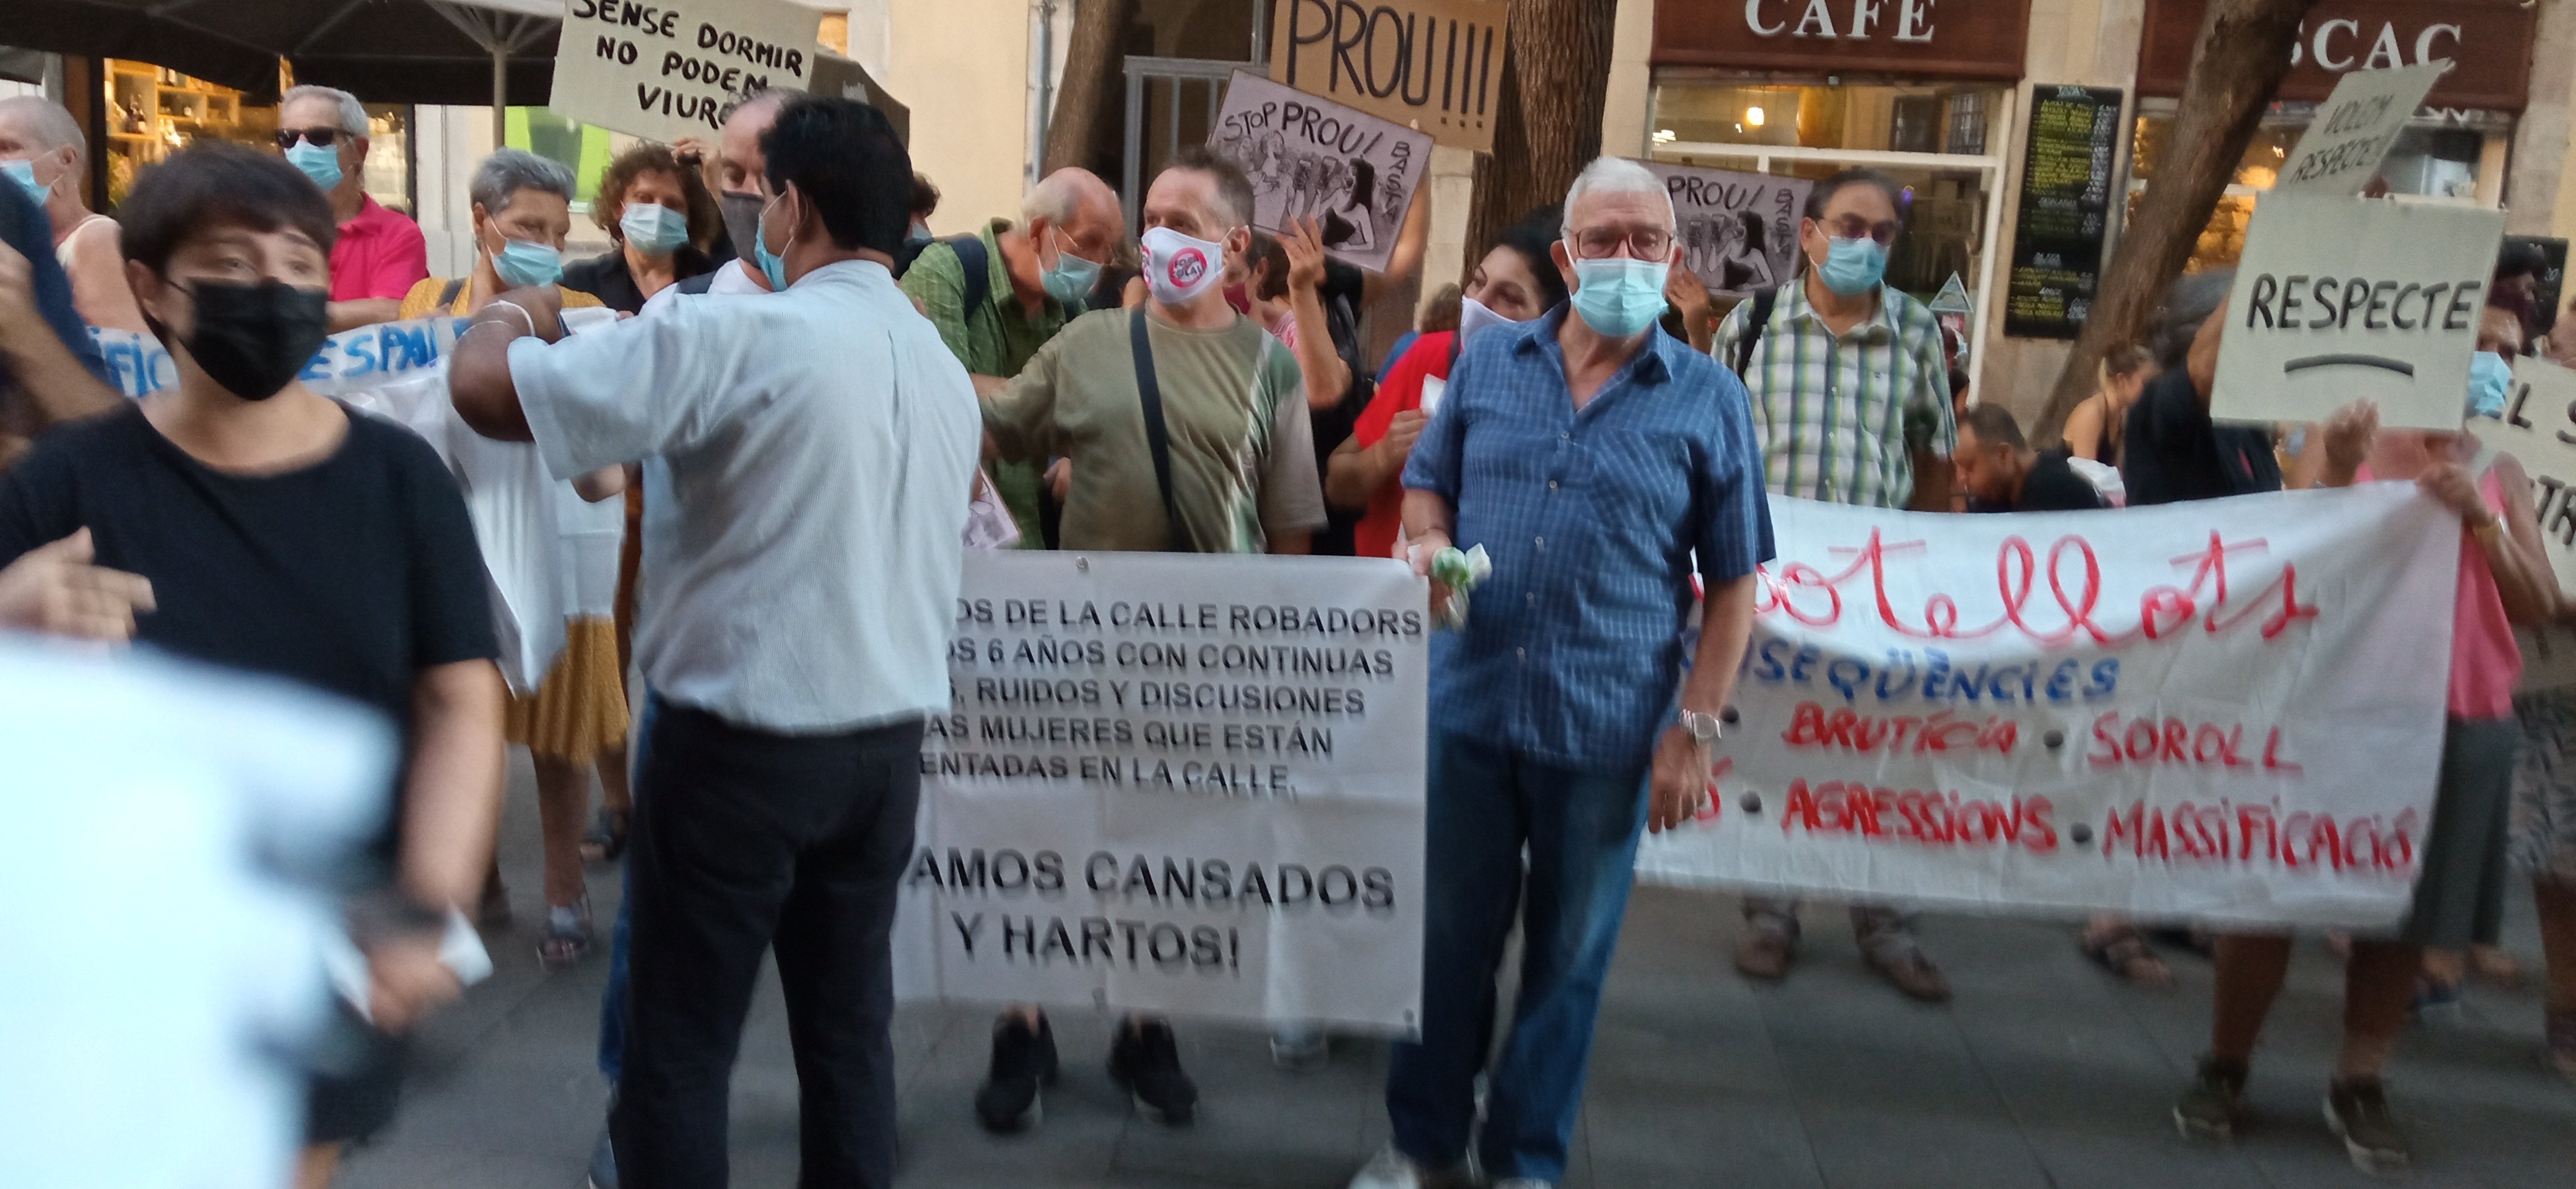 protesta botellon barcelona ciutat vella 3 jordi palmer